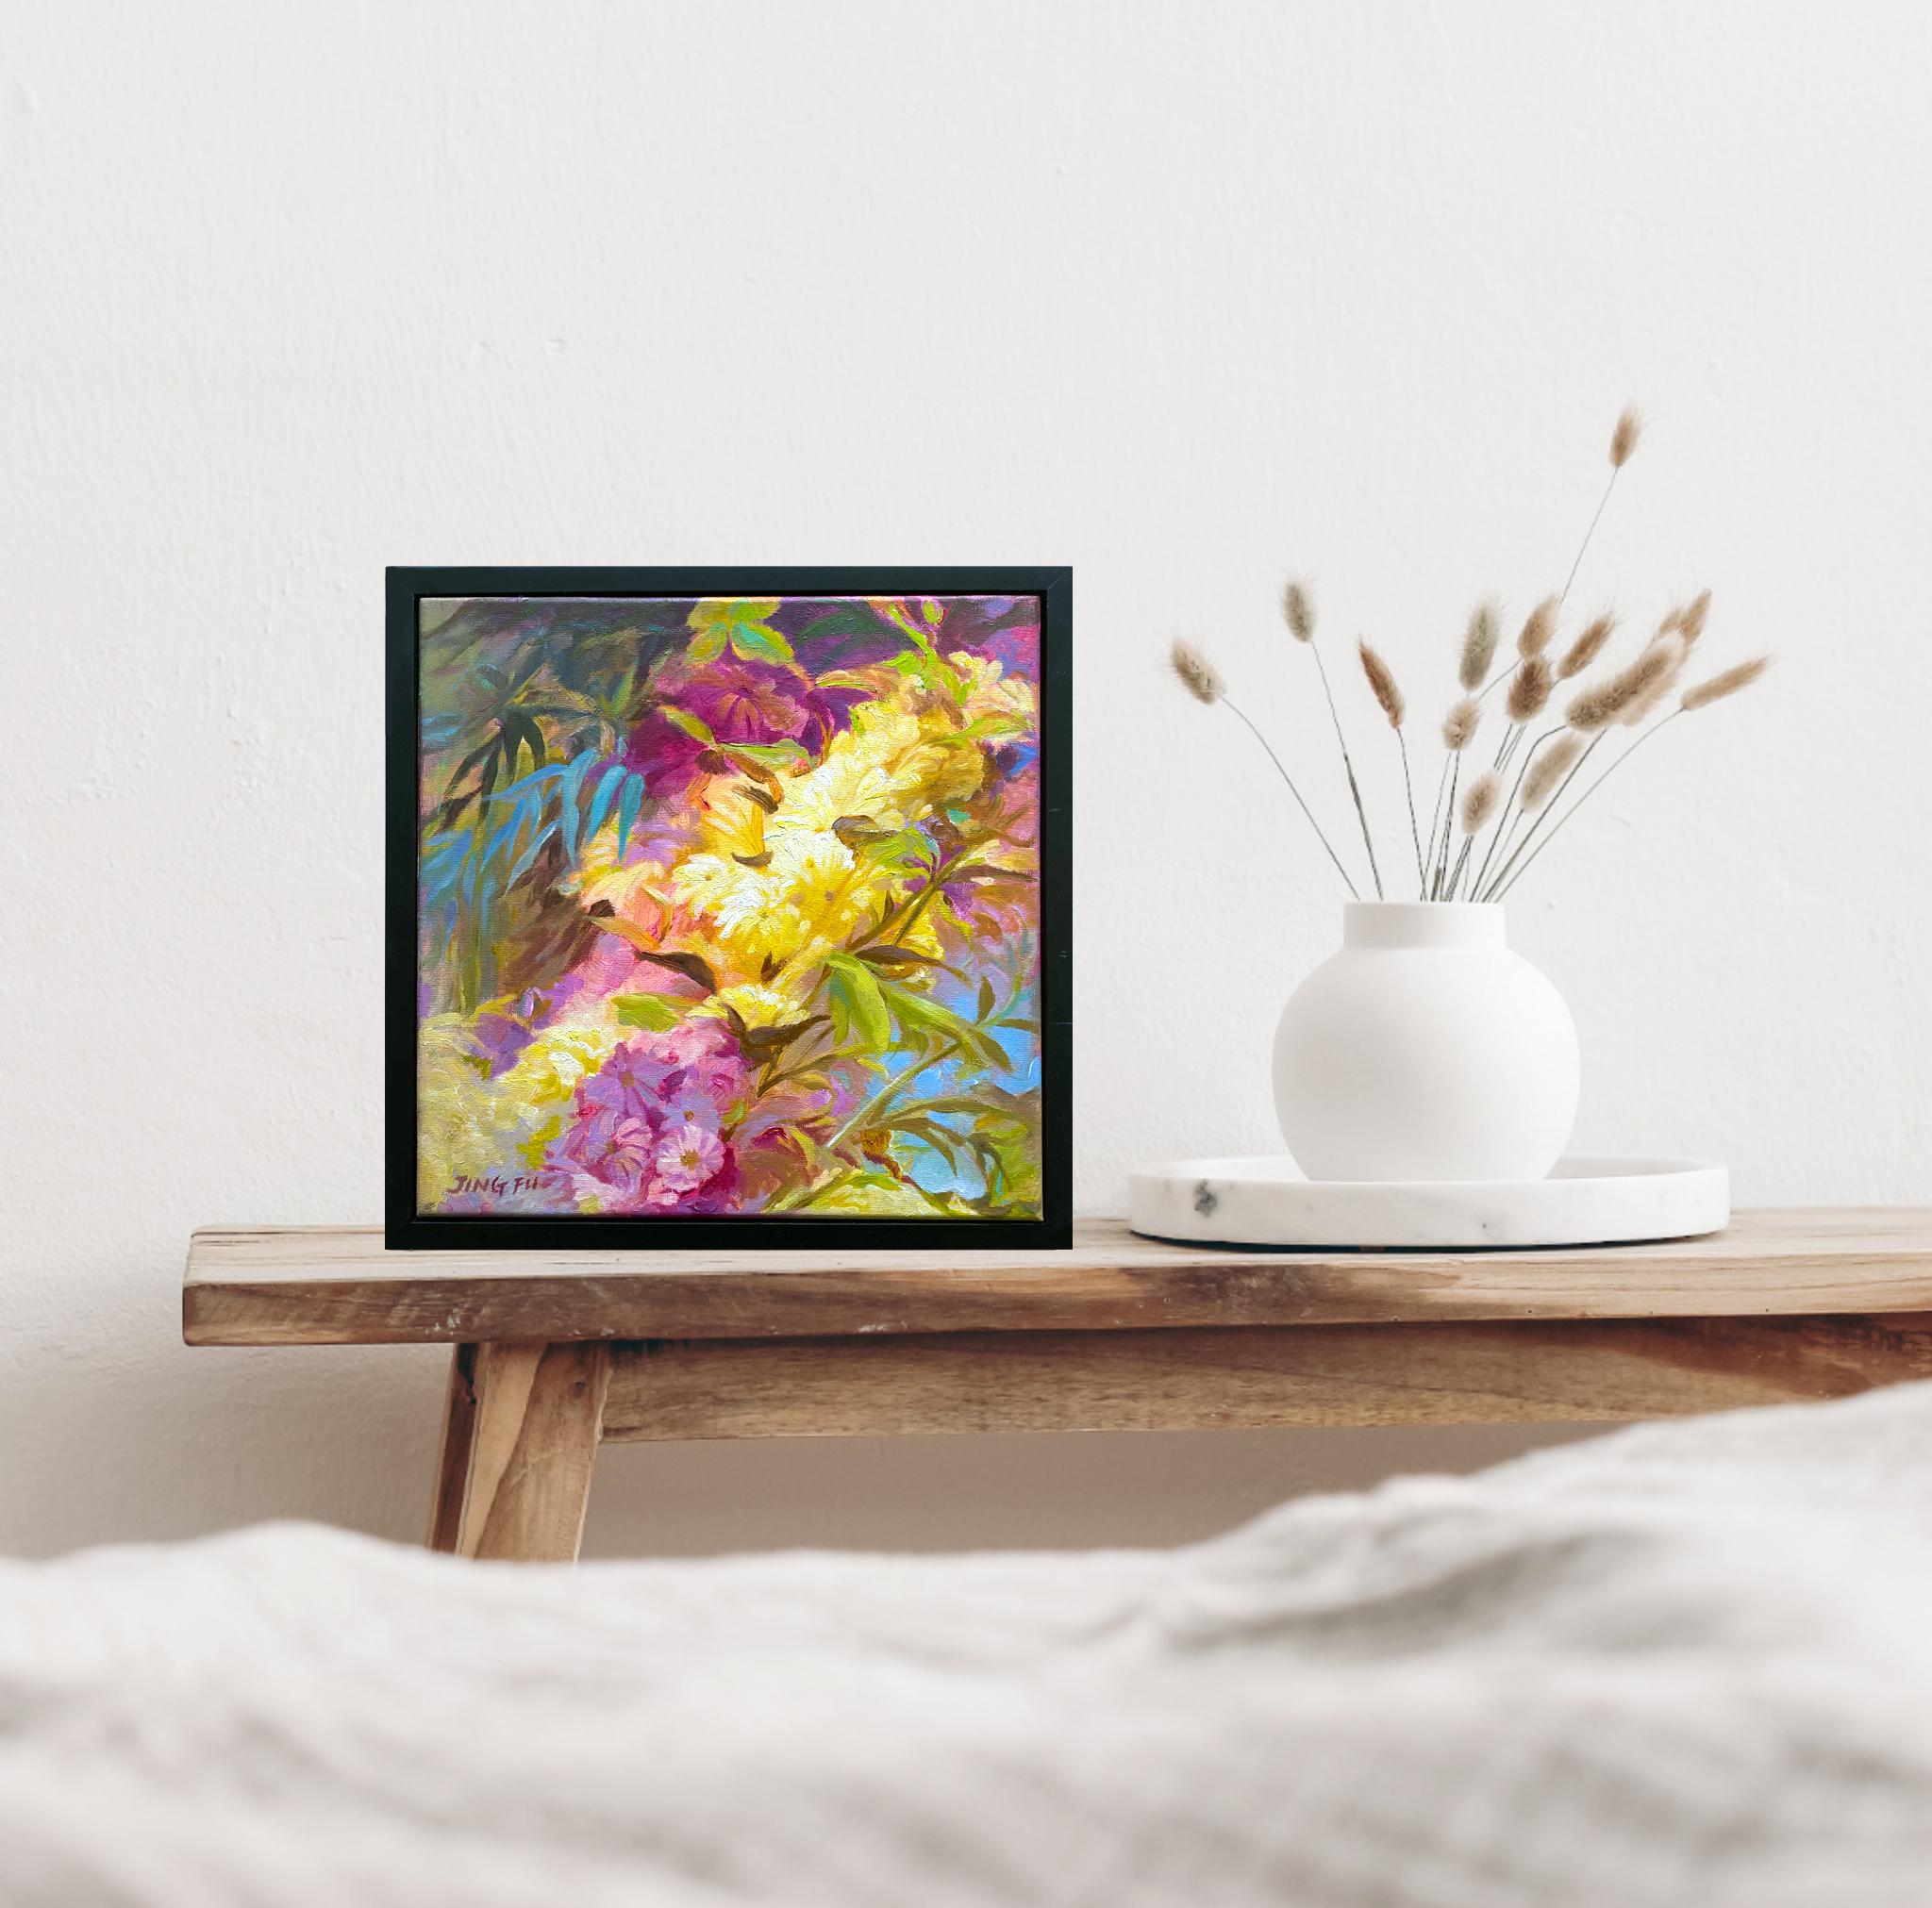 Zest est une peinture à l'huile vibrante sur toile représentant un bouquet de fleurs colorées en rose et jaune.
Livré encadré et prêt à être accroché.

